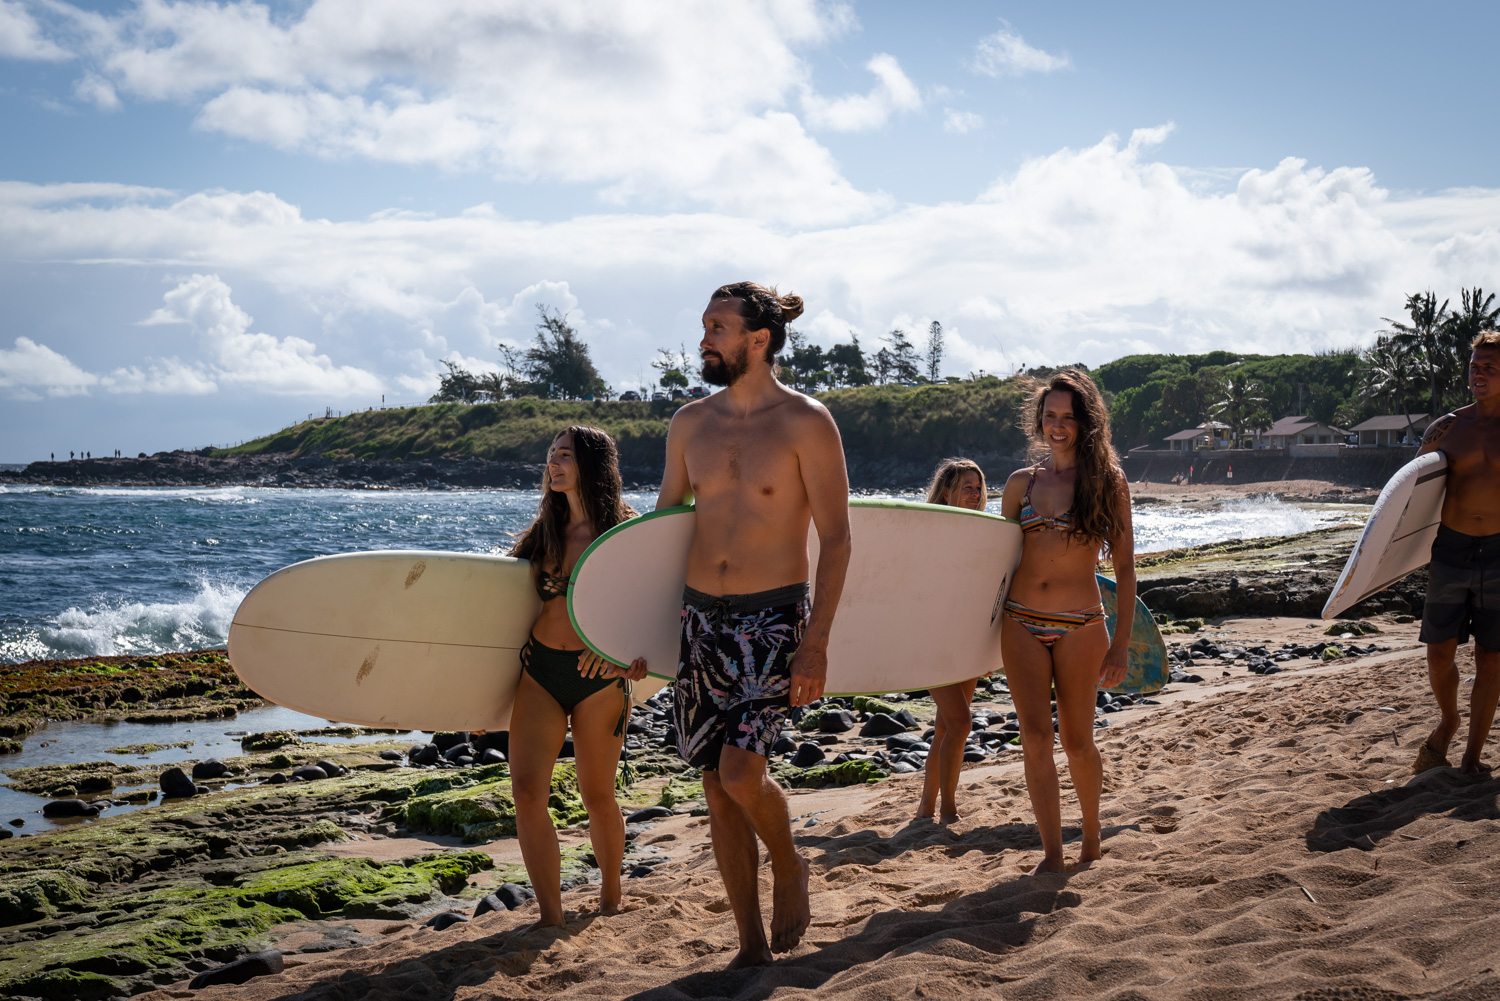 Maui surf Lessons